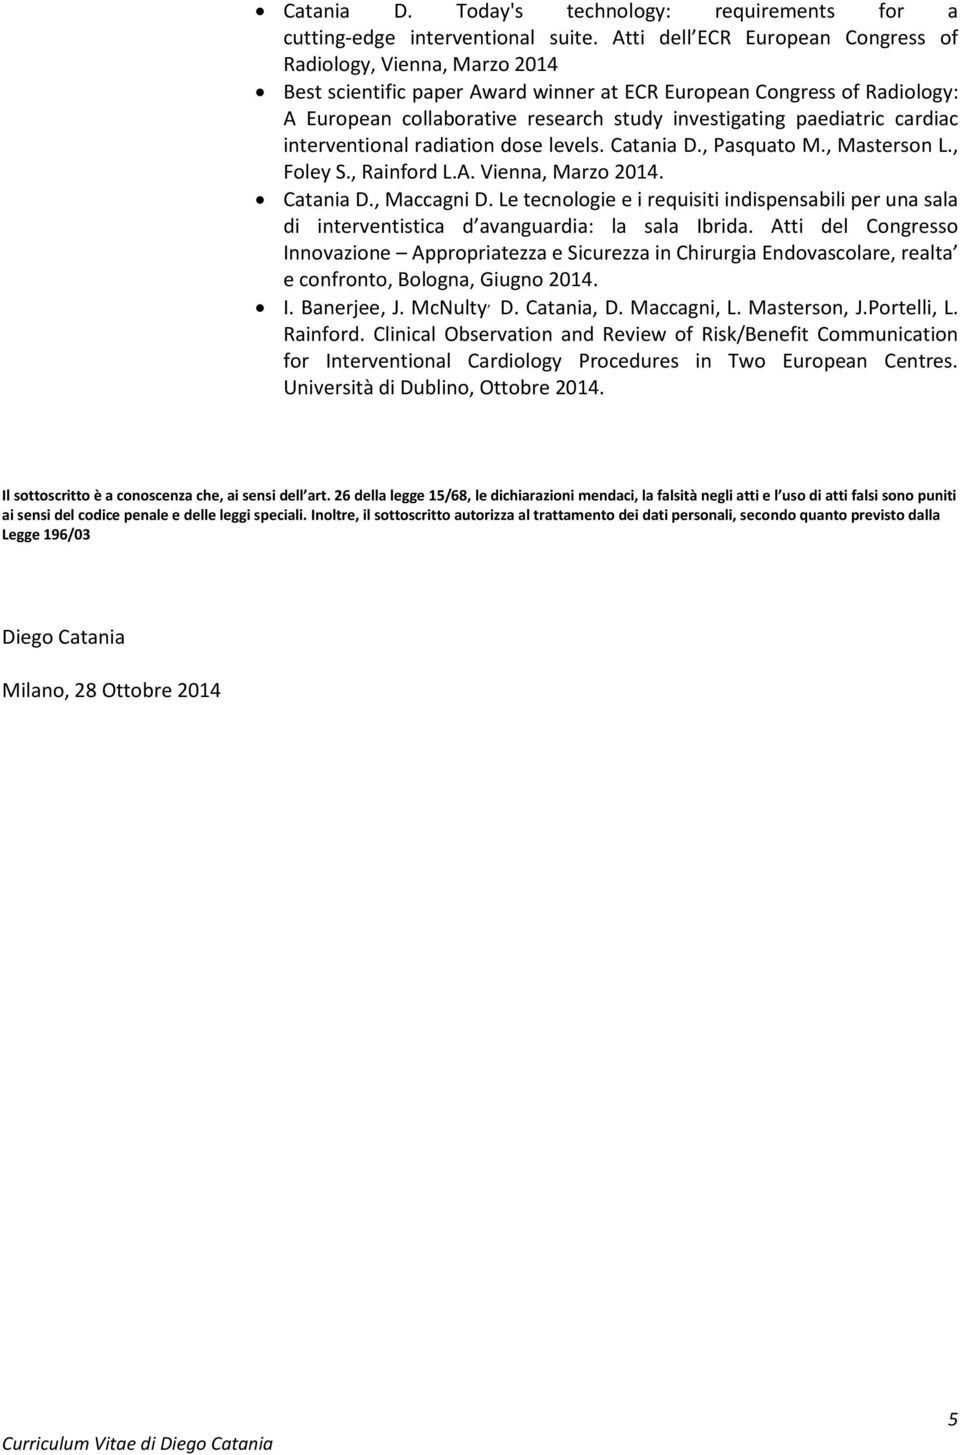 paediatric cardiac interventional radiation dose levels. Catania D., Pasquato M., Masterson L., Foley S., Rainford L.A. Vienna, Marzo 2014. Catania D., Maccagni D.